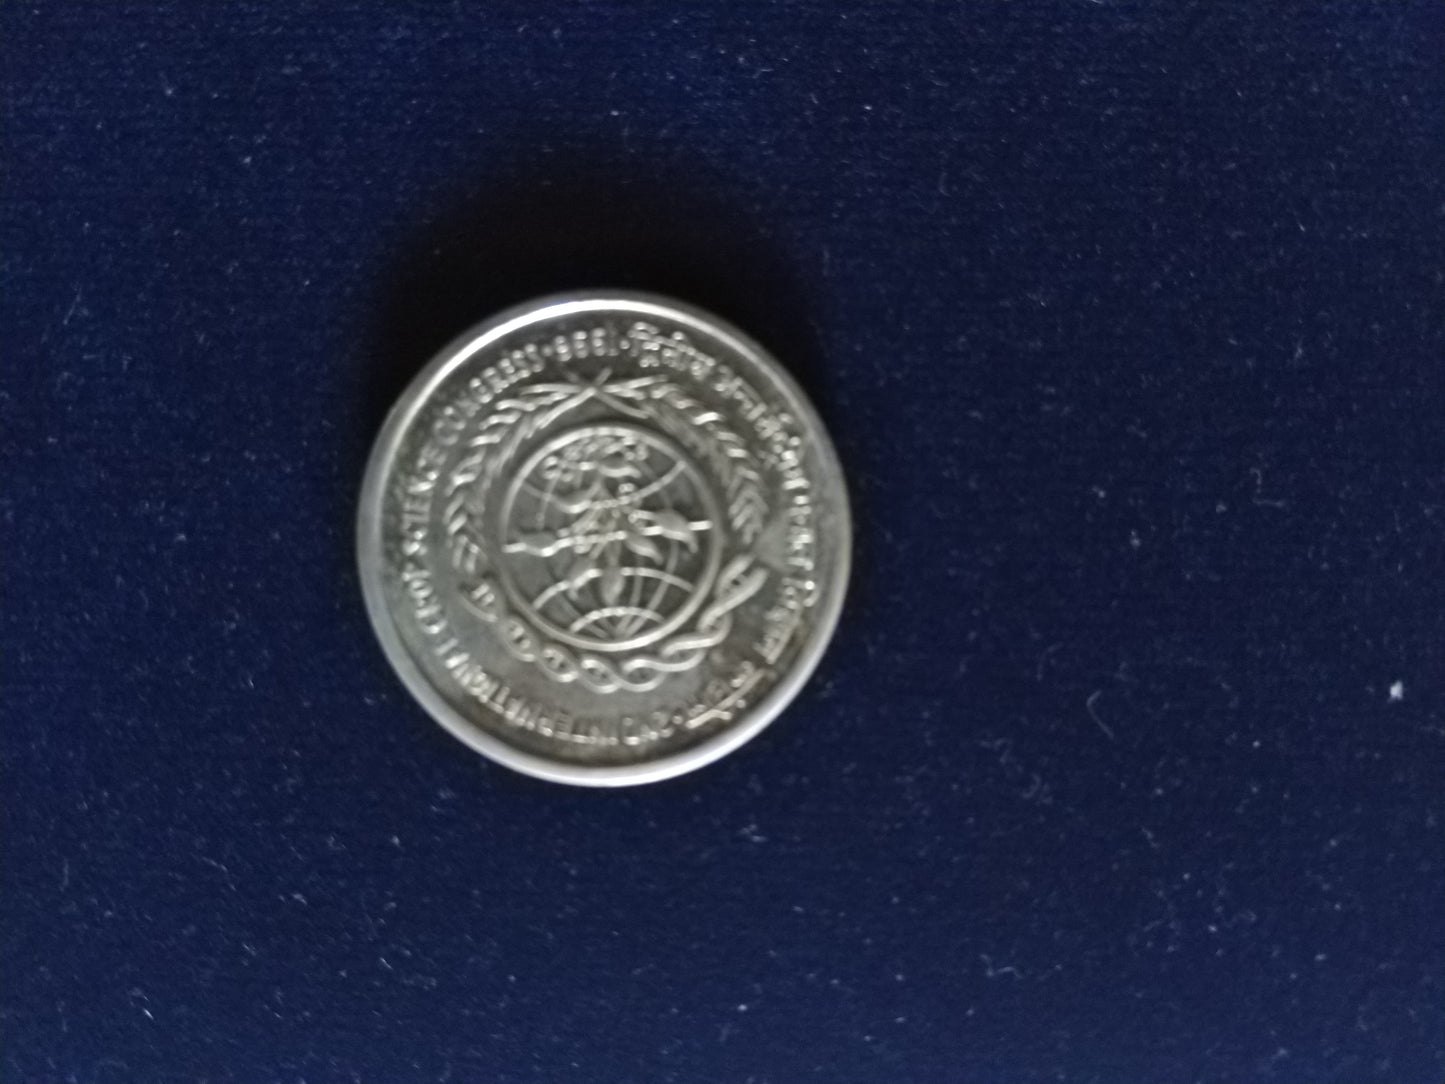 भारत द्वितीय अंतर्राष्ट्रीय फसल विज्ञान कांग्रेस 1996 प्रेजेंटेशन पैक में प्रमाण सिक्का